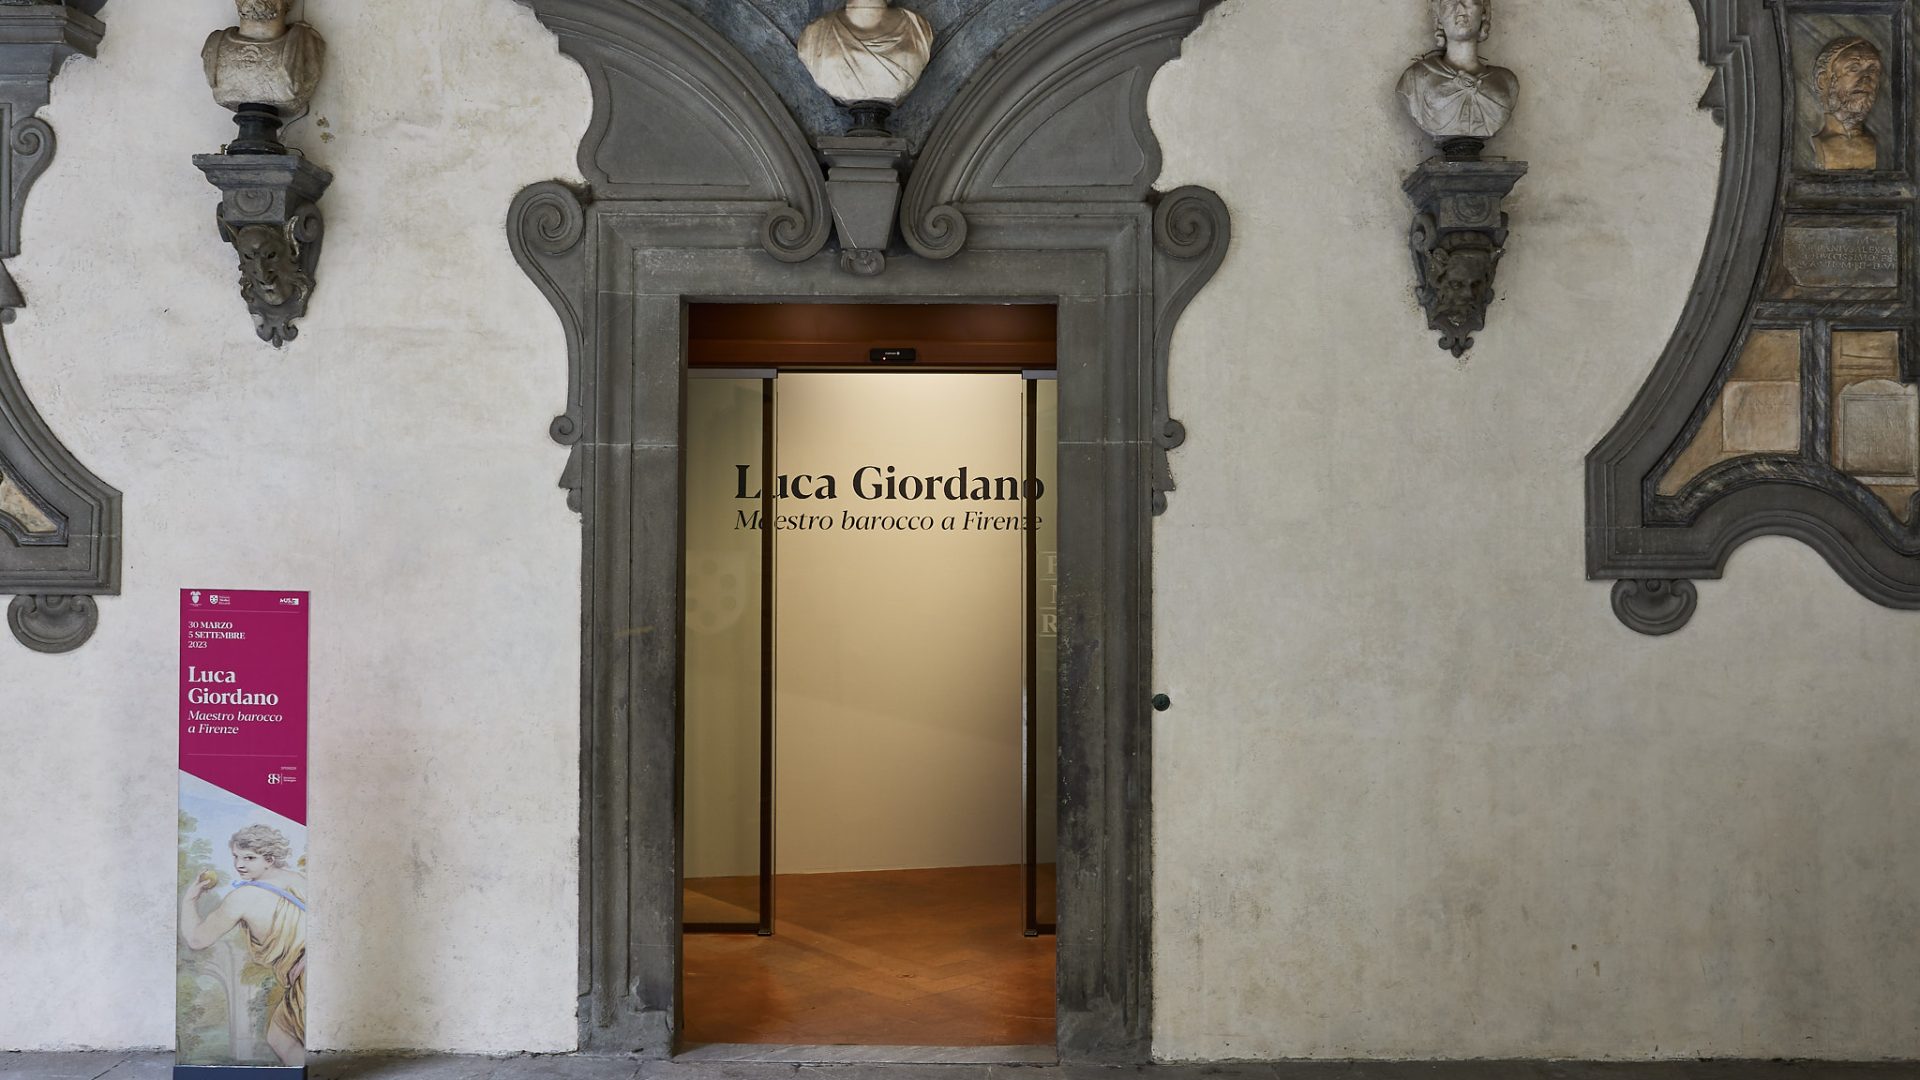 Luca Giordano. Maestro barocco a Firenze. Ingresso alla mostra